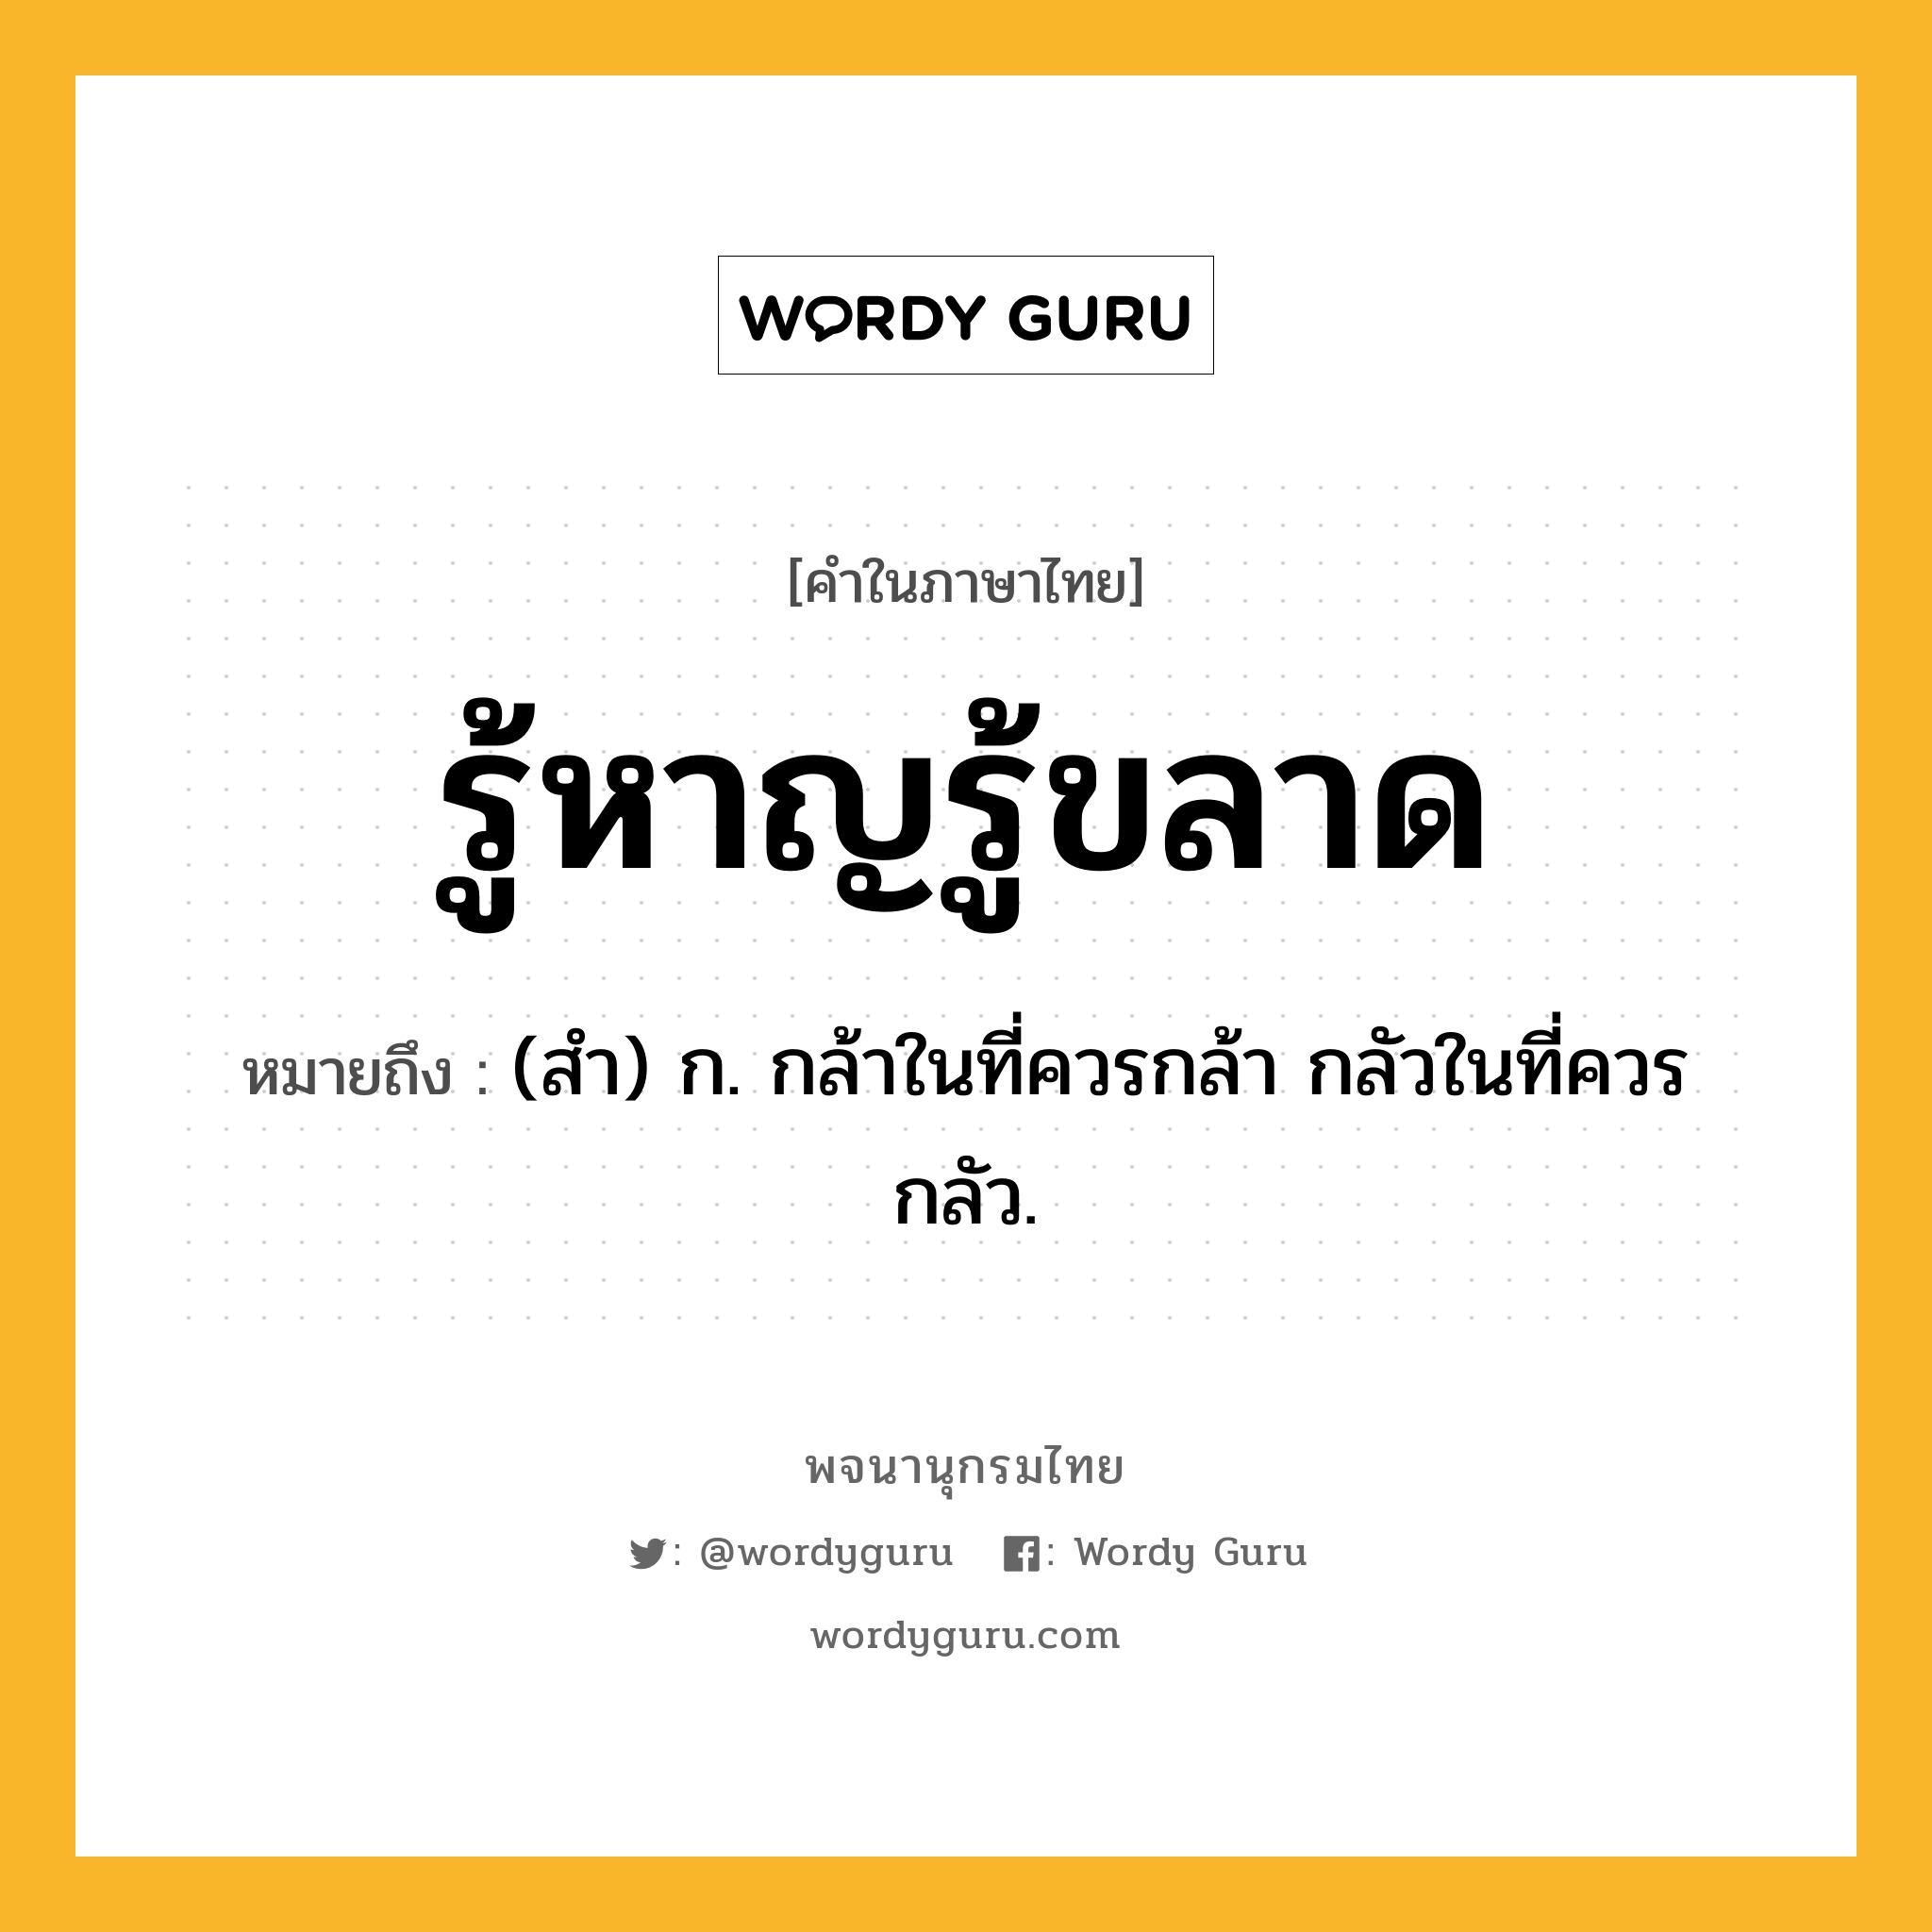 รู้หาญรู้ขลาด ความหมาย หมายถึงอะไร?, คำในภาษาไทย รู้หาญรู้ขลาด หมายถึง (สํา) ก. กล้าในที่ควรกล้า กลัวในที่ควรกลัว.